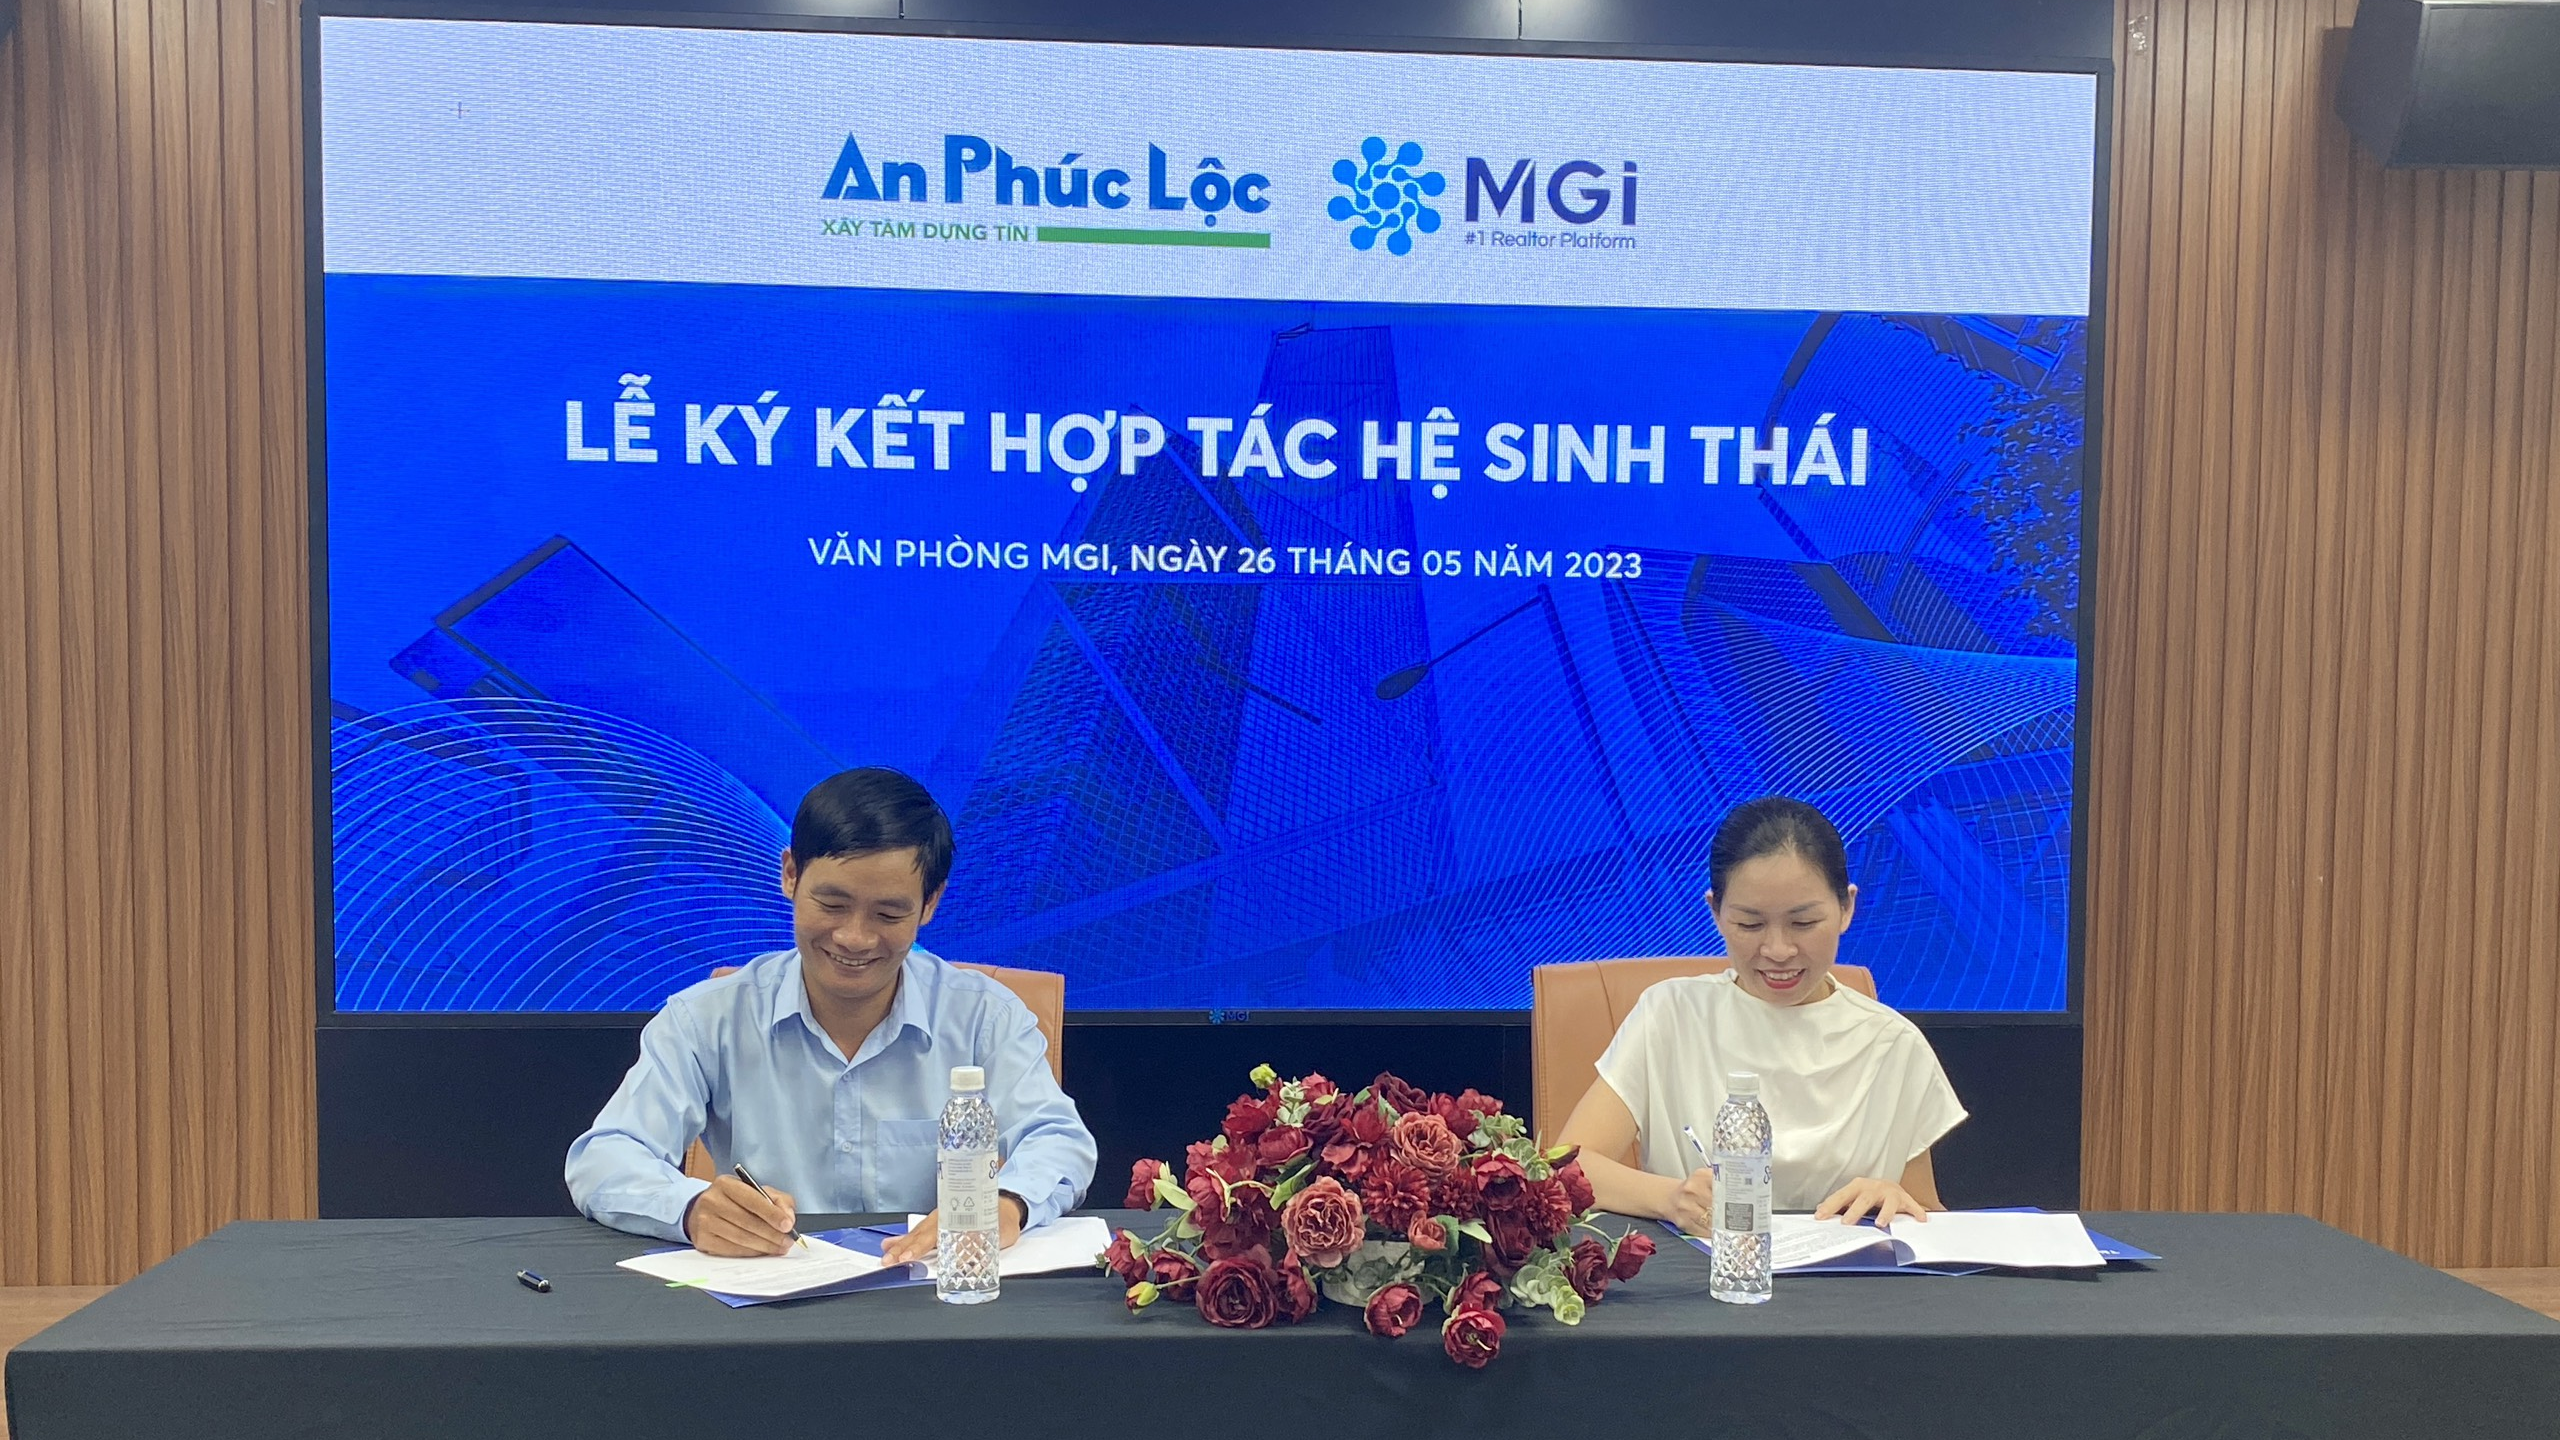 Lễ ký kết hợp tác hệ sinh thái giữa MGi và Công ty TNHH Kiến trúc & Nội thất An Phúc Lộc